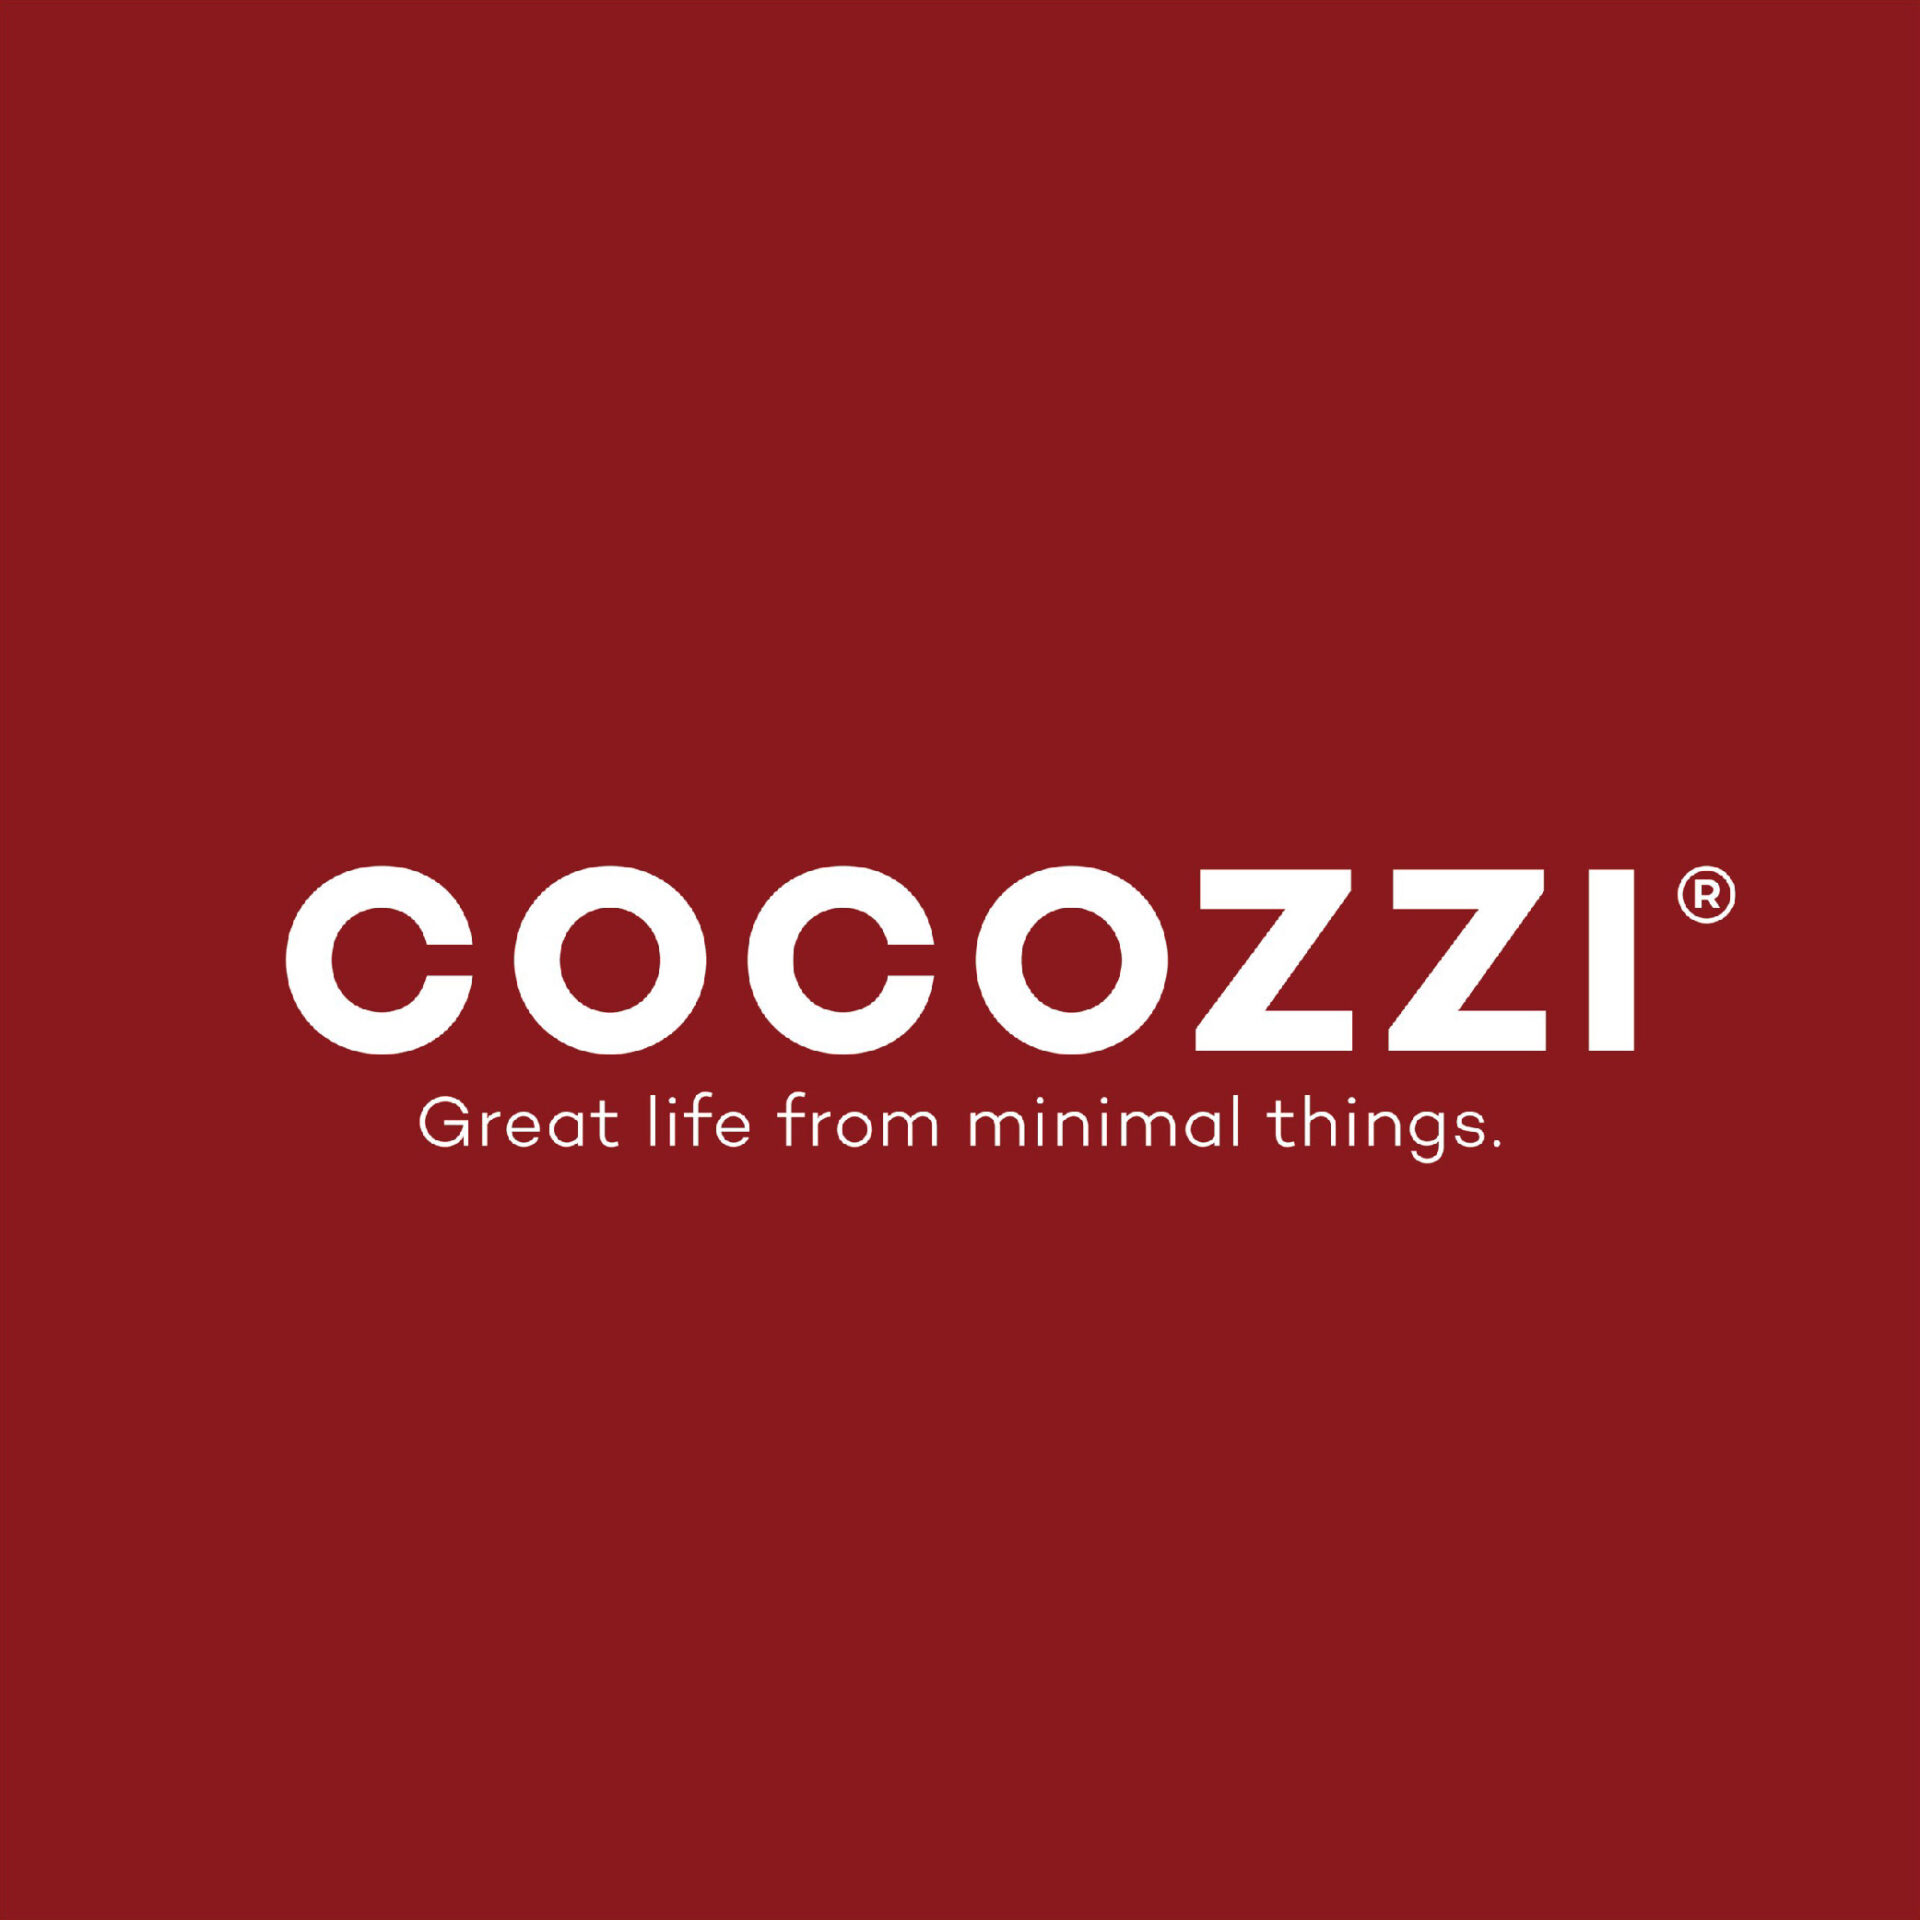 Cocozi logo 02 scaled